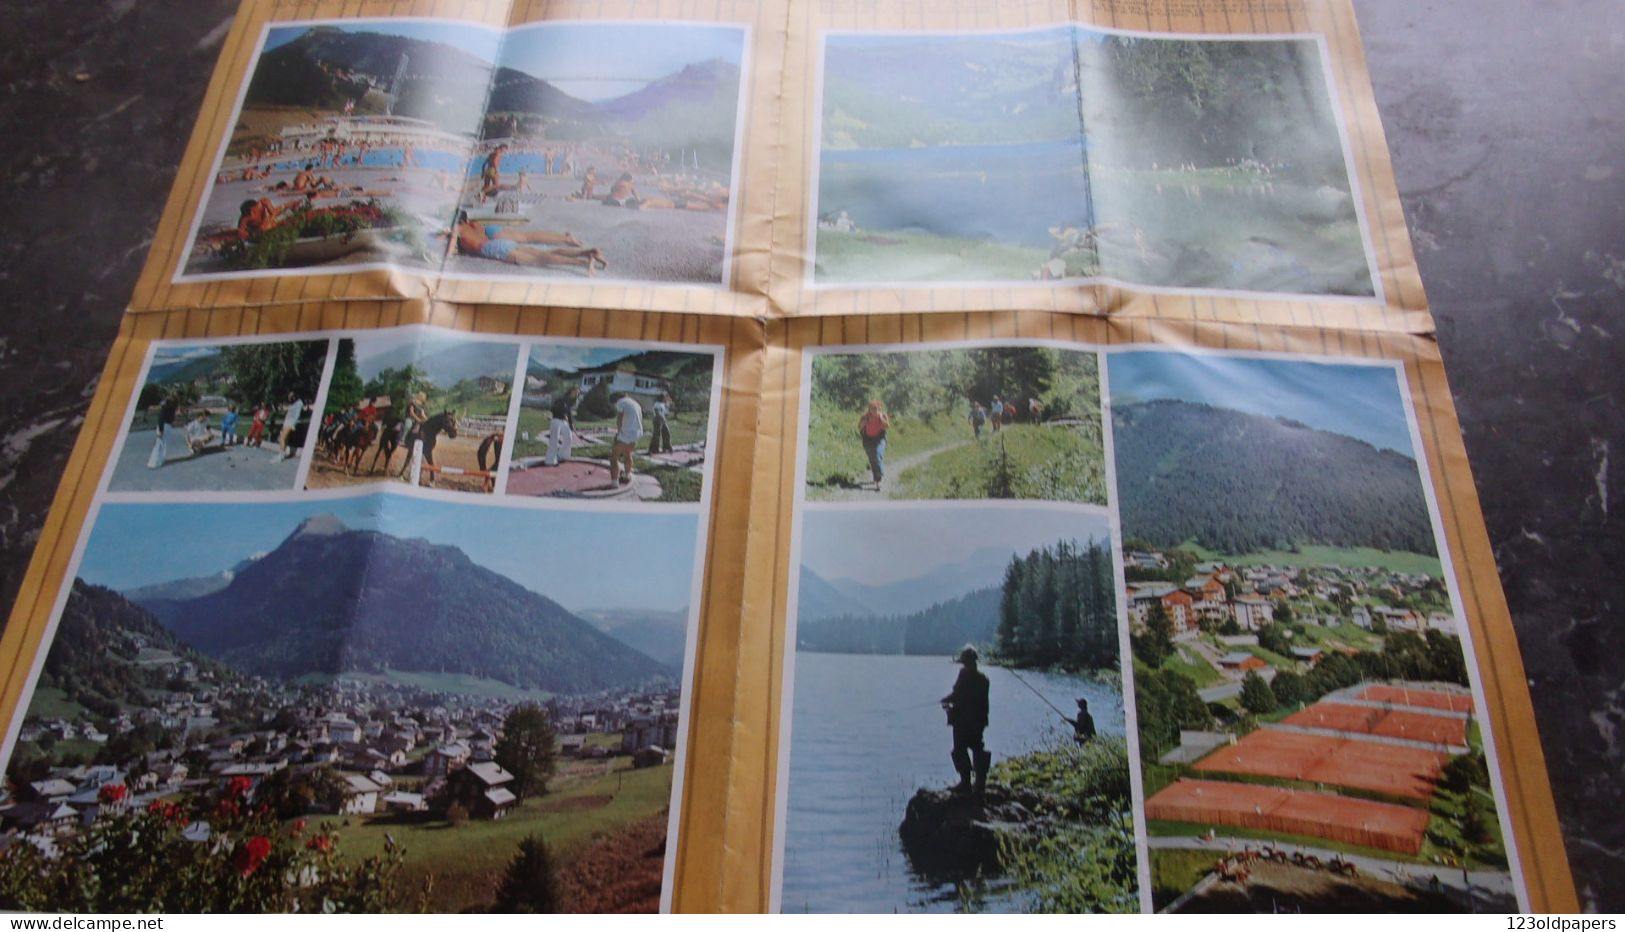 DEPLIANT TOURISTIQUE AFFICHE MORZINE  AVORIAZ - Tourism Brochures